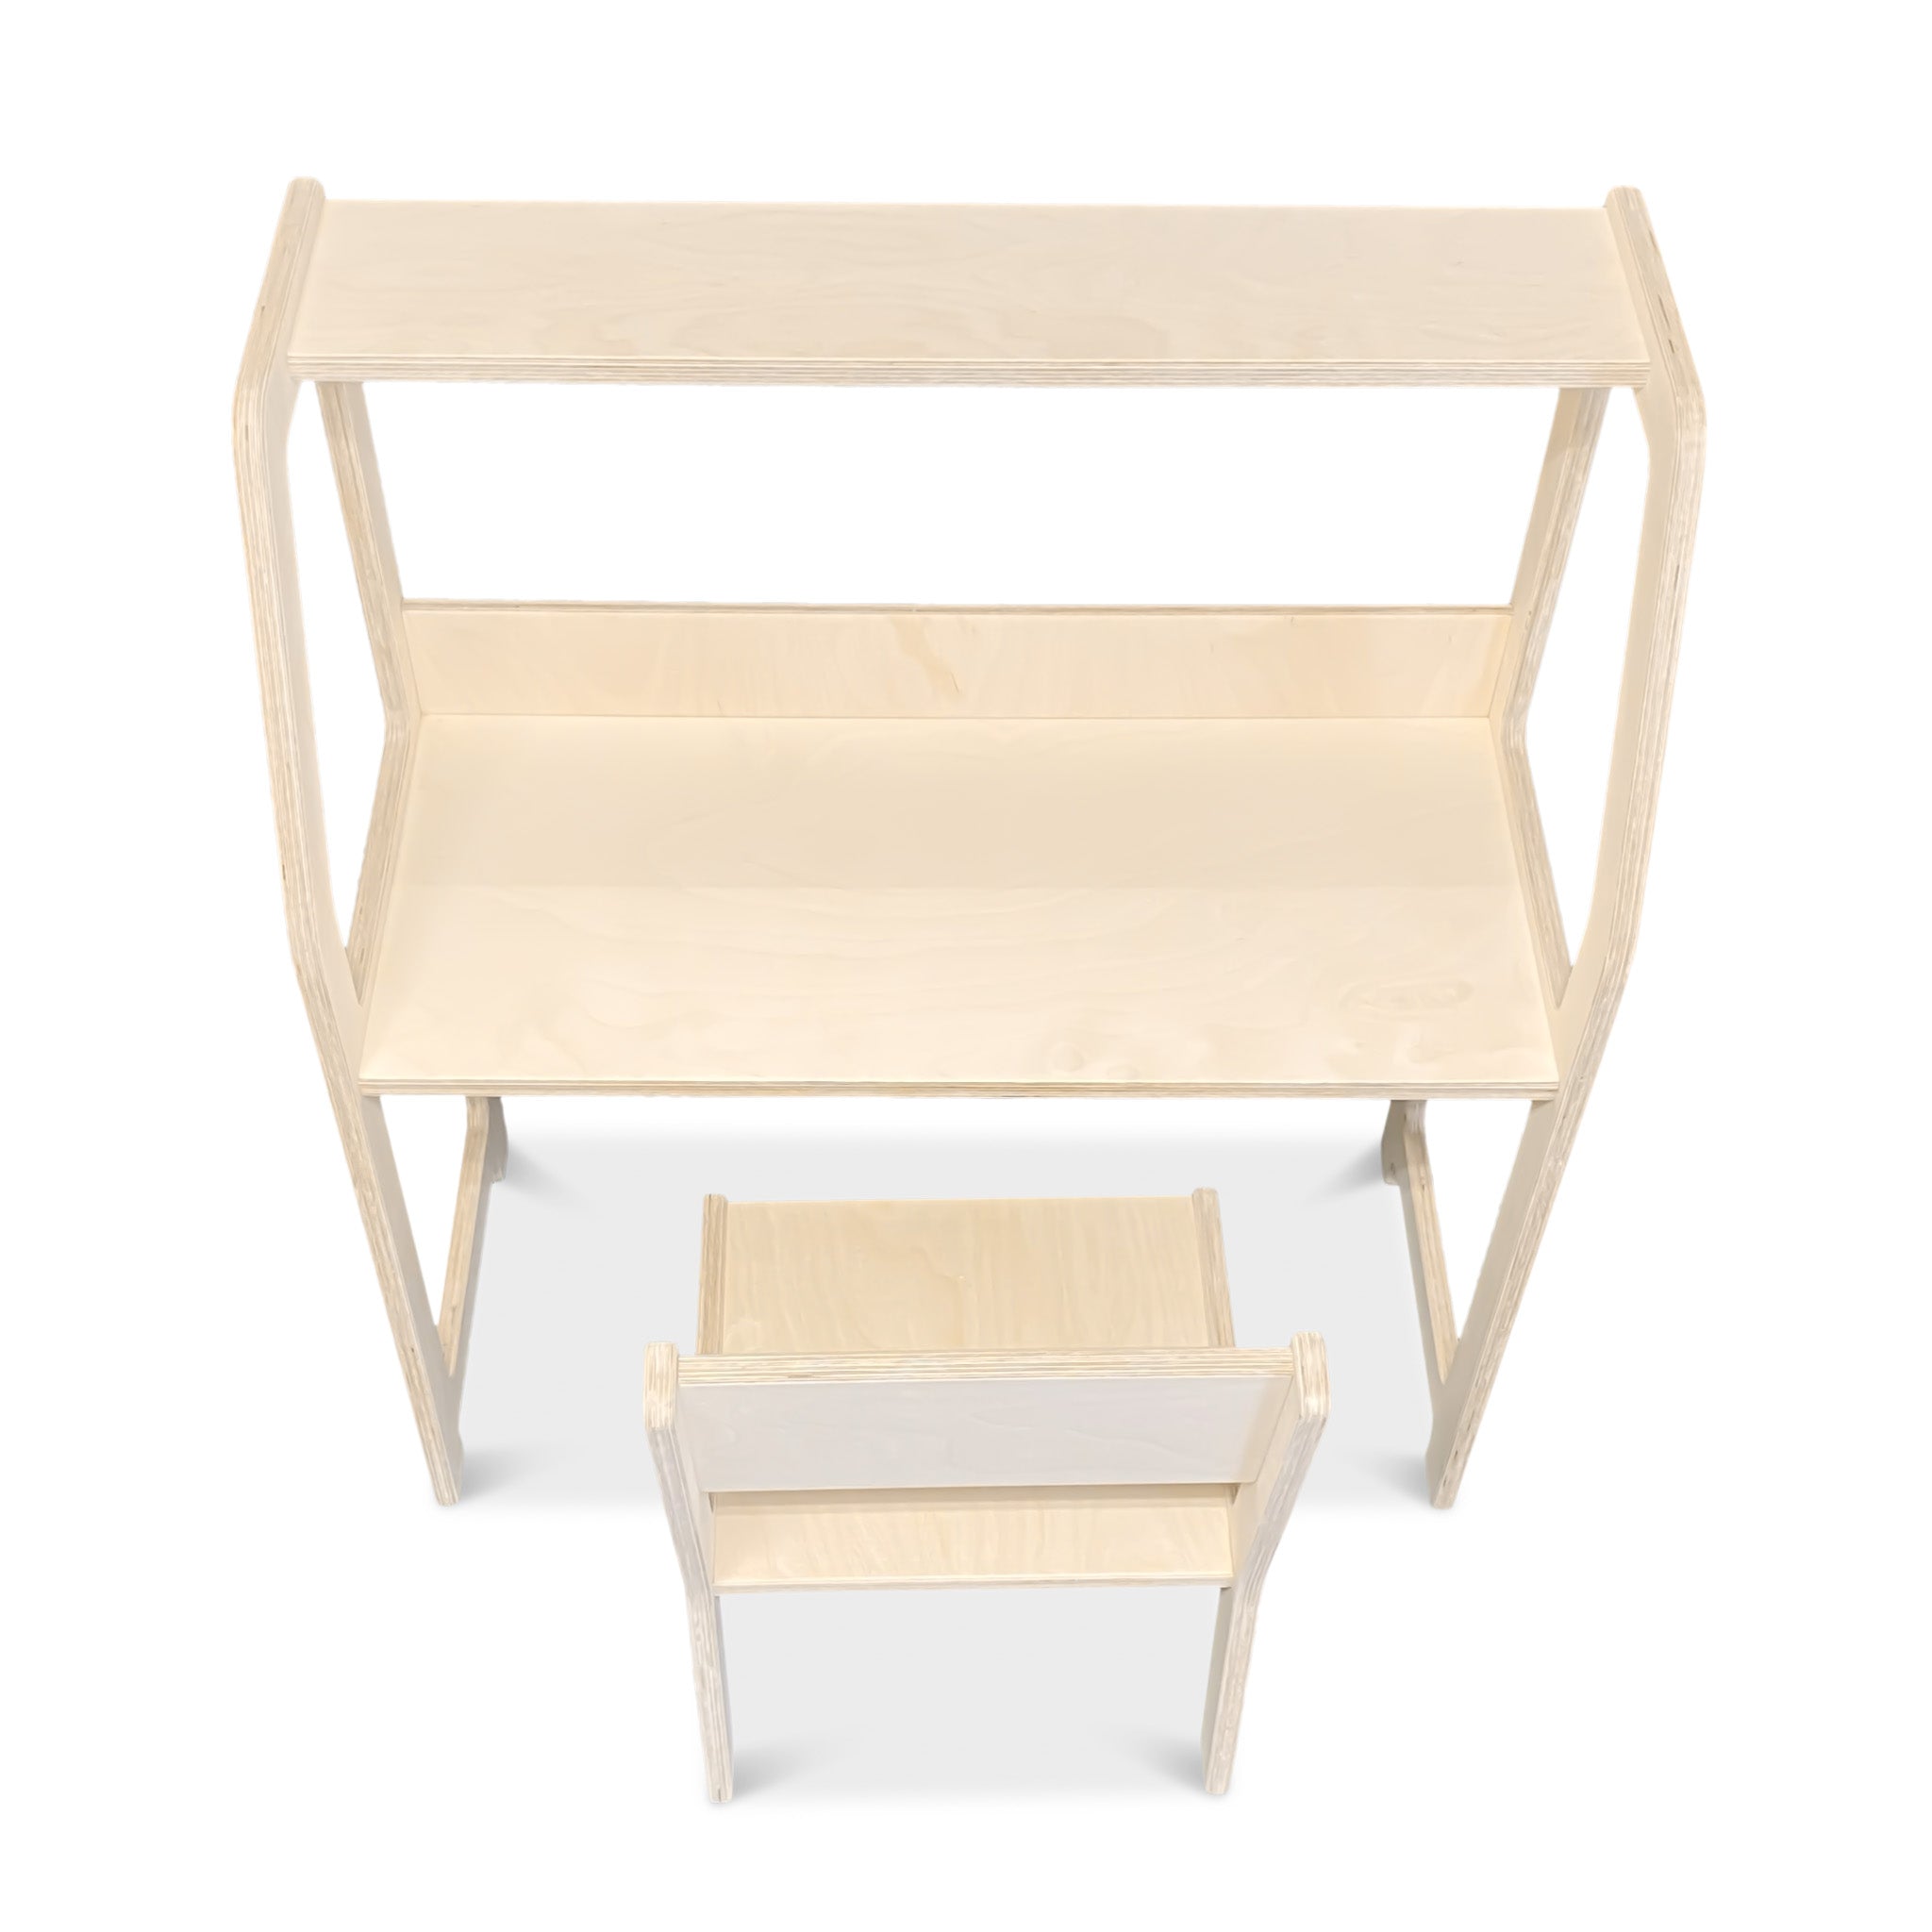 Montessori houten bureau kinderkamer 2-7 jaar | Met stoel - blank